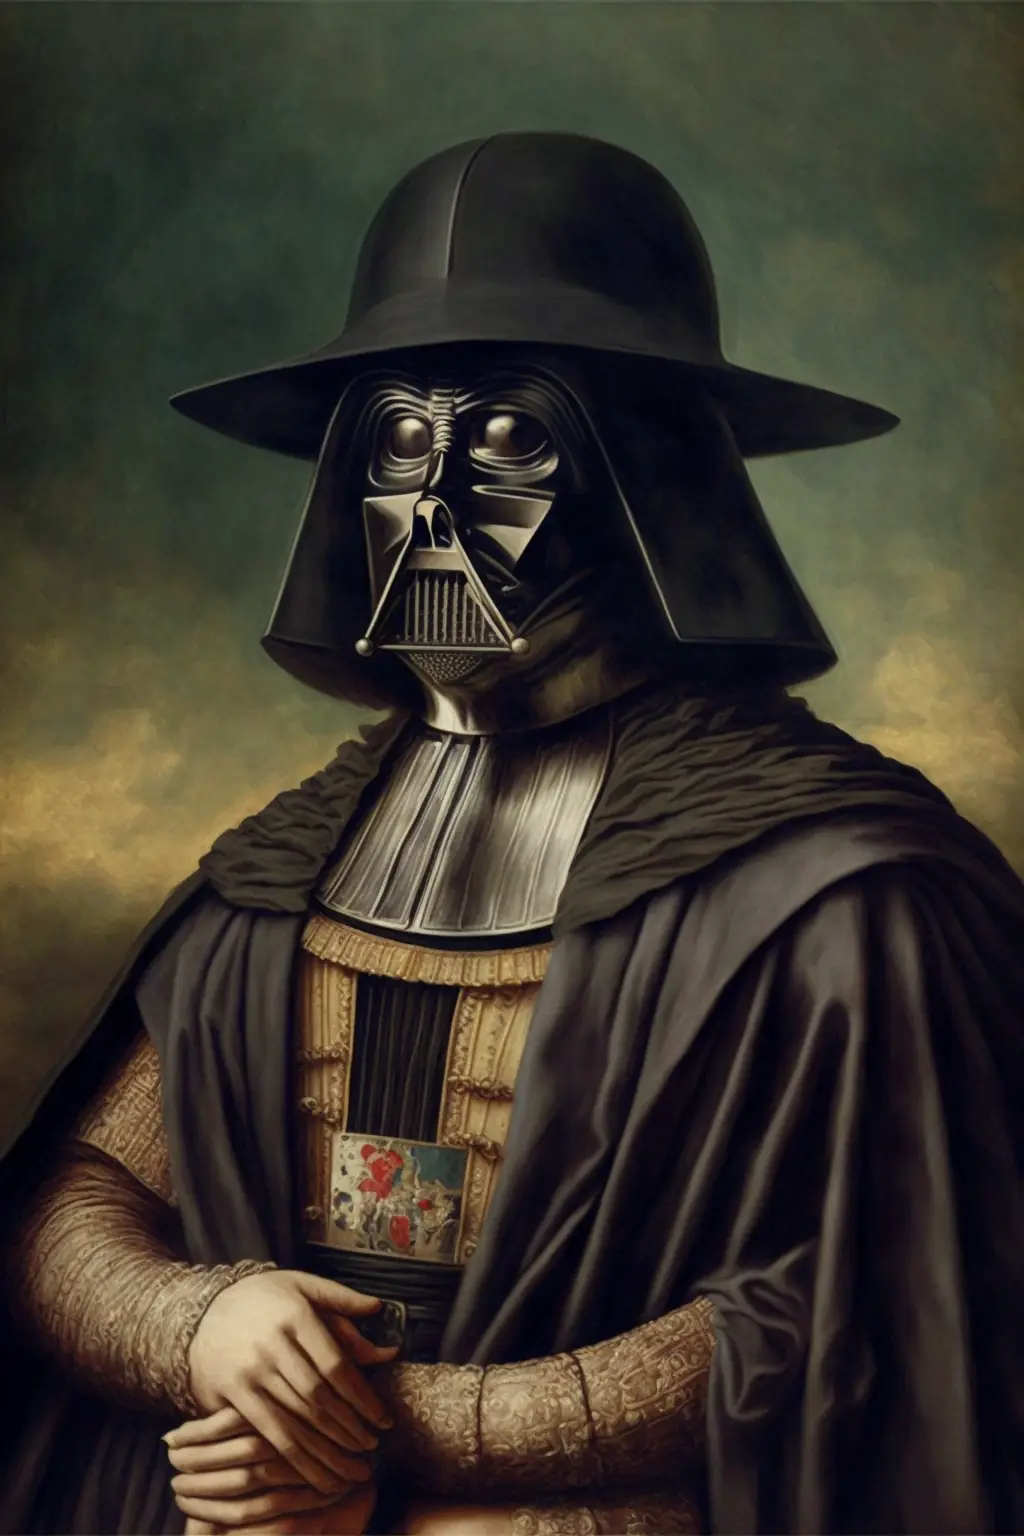 A Fashionable Darth Vader